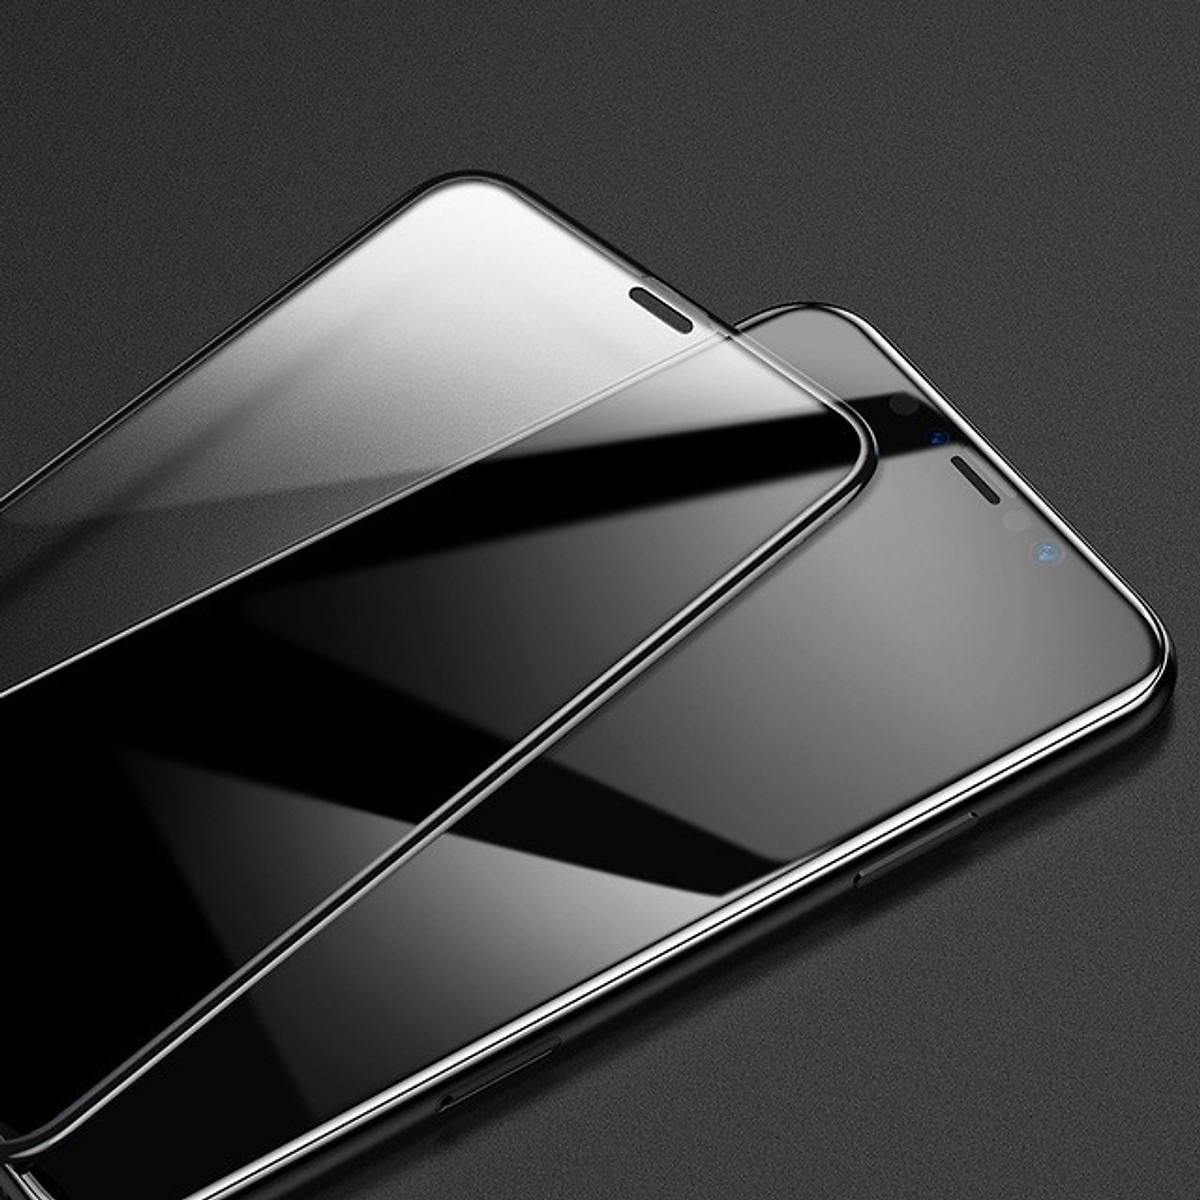 Bộ 2 Miếng dán kính cường lực Full 3D cho iPhone 11 Pro 5.8 / iPhone X / Xs hiệu Baseus (mỏng 0.3mm, Full màn 3D, Phủ Nano) - Hàng nhập khẩu